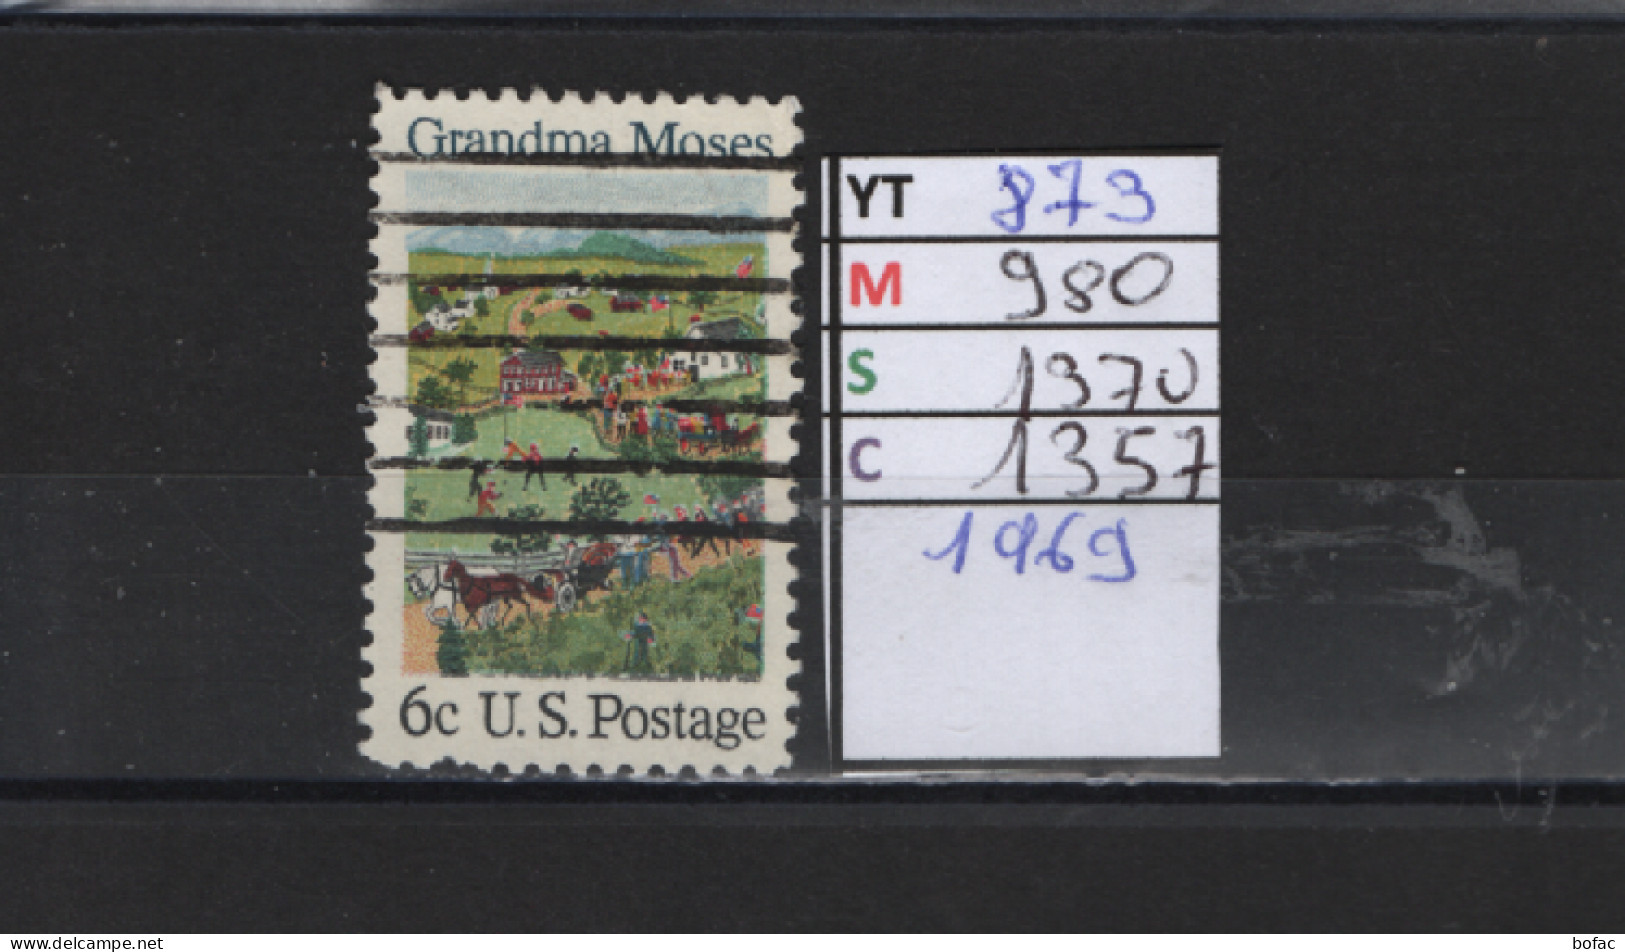 PRIX FIXE Obl 873 YT 980 MIC 1370 SCO 1357GIB Grandma Moses 1969 Etats Unis  58A/13 - Used Stamps